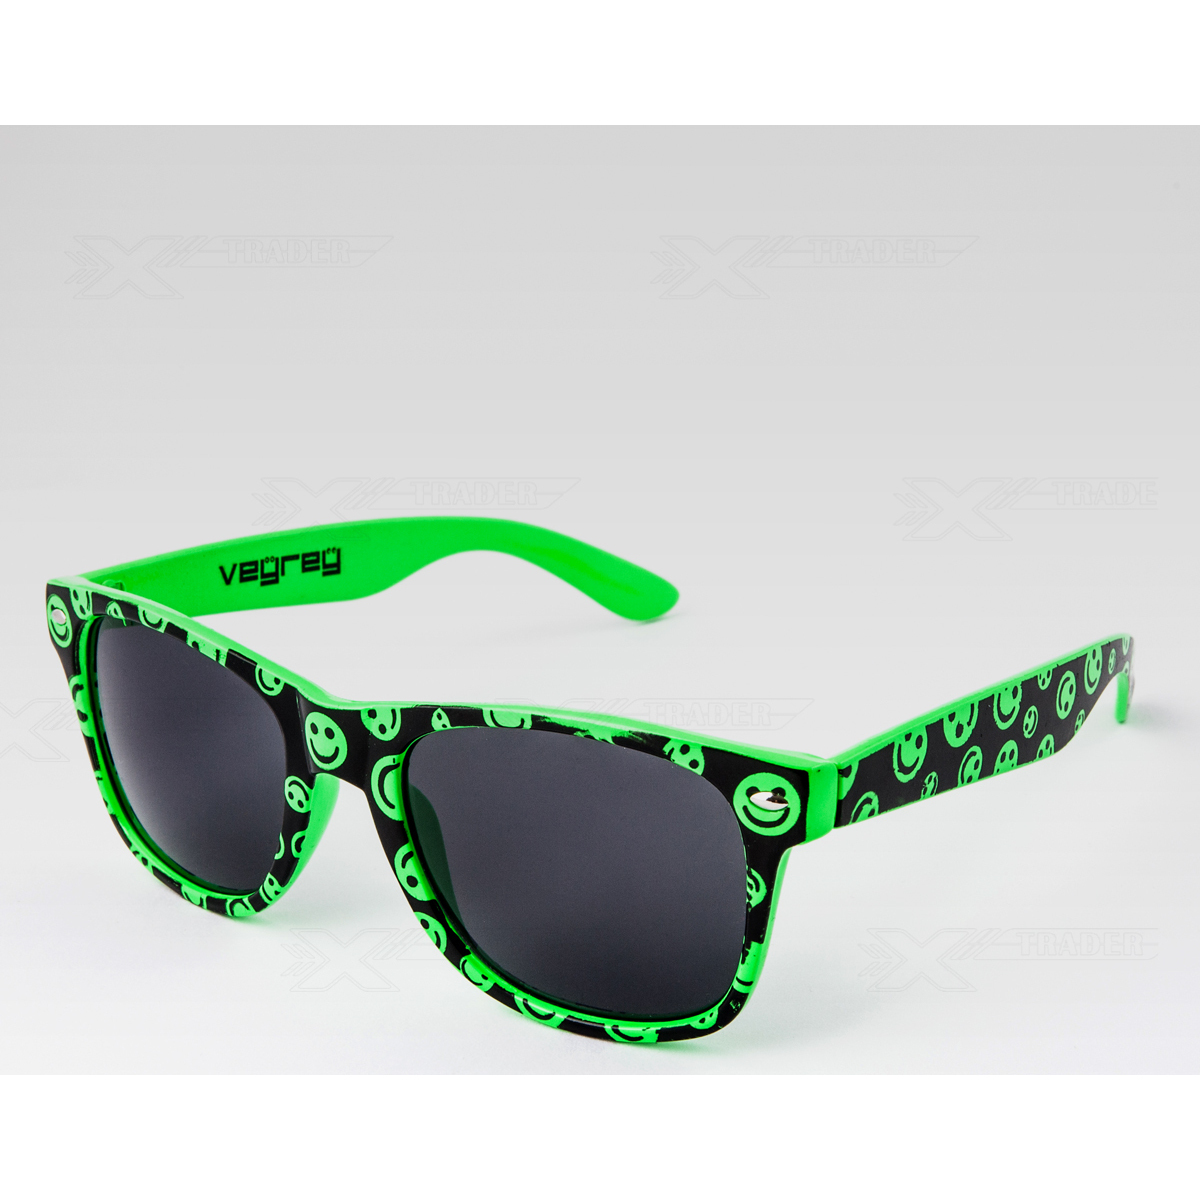 Hodinky & Bižuterie sluneční brýle Oem Sluneční brýle Nerd smajlík zelená Zelená